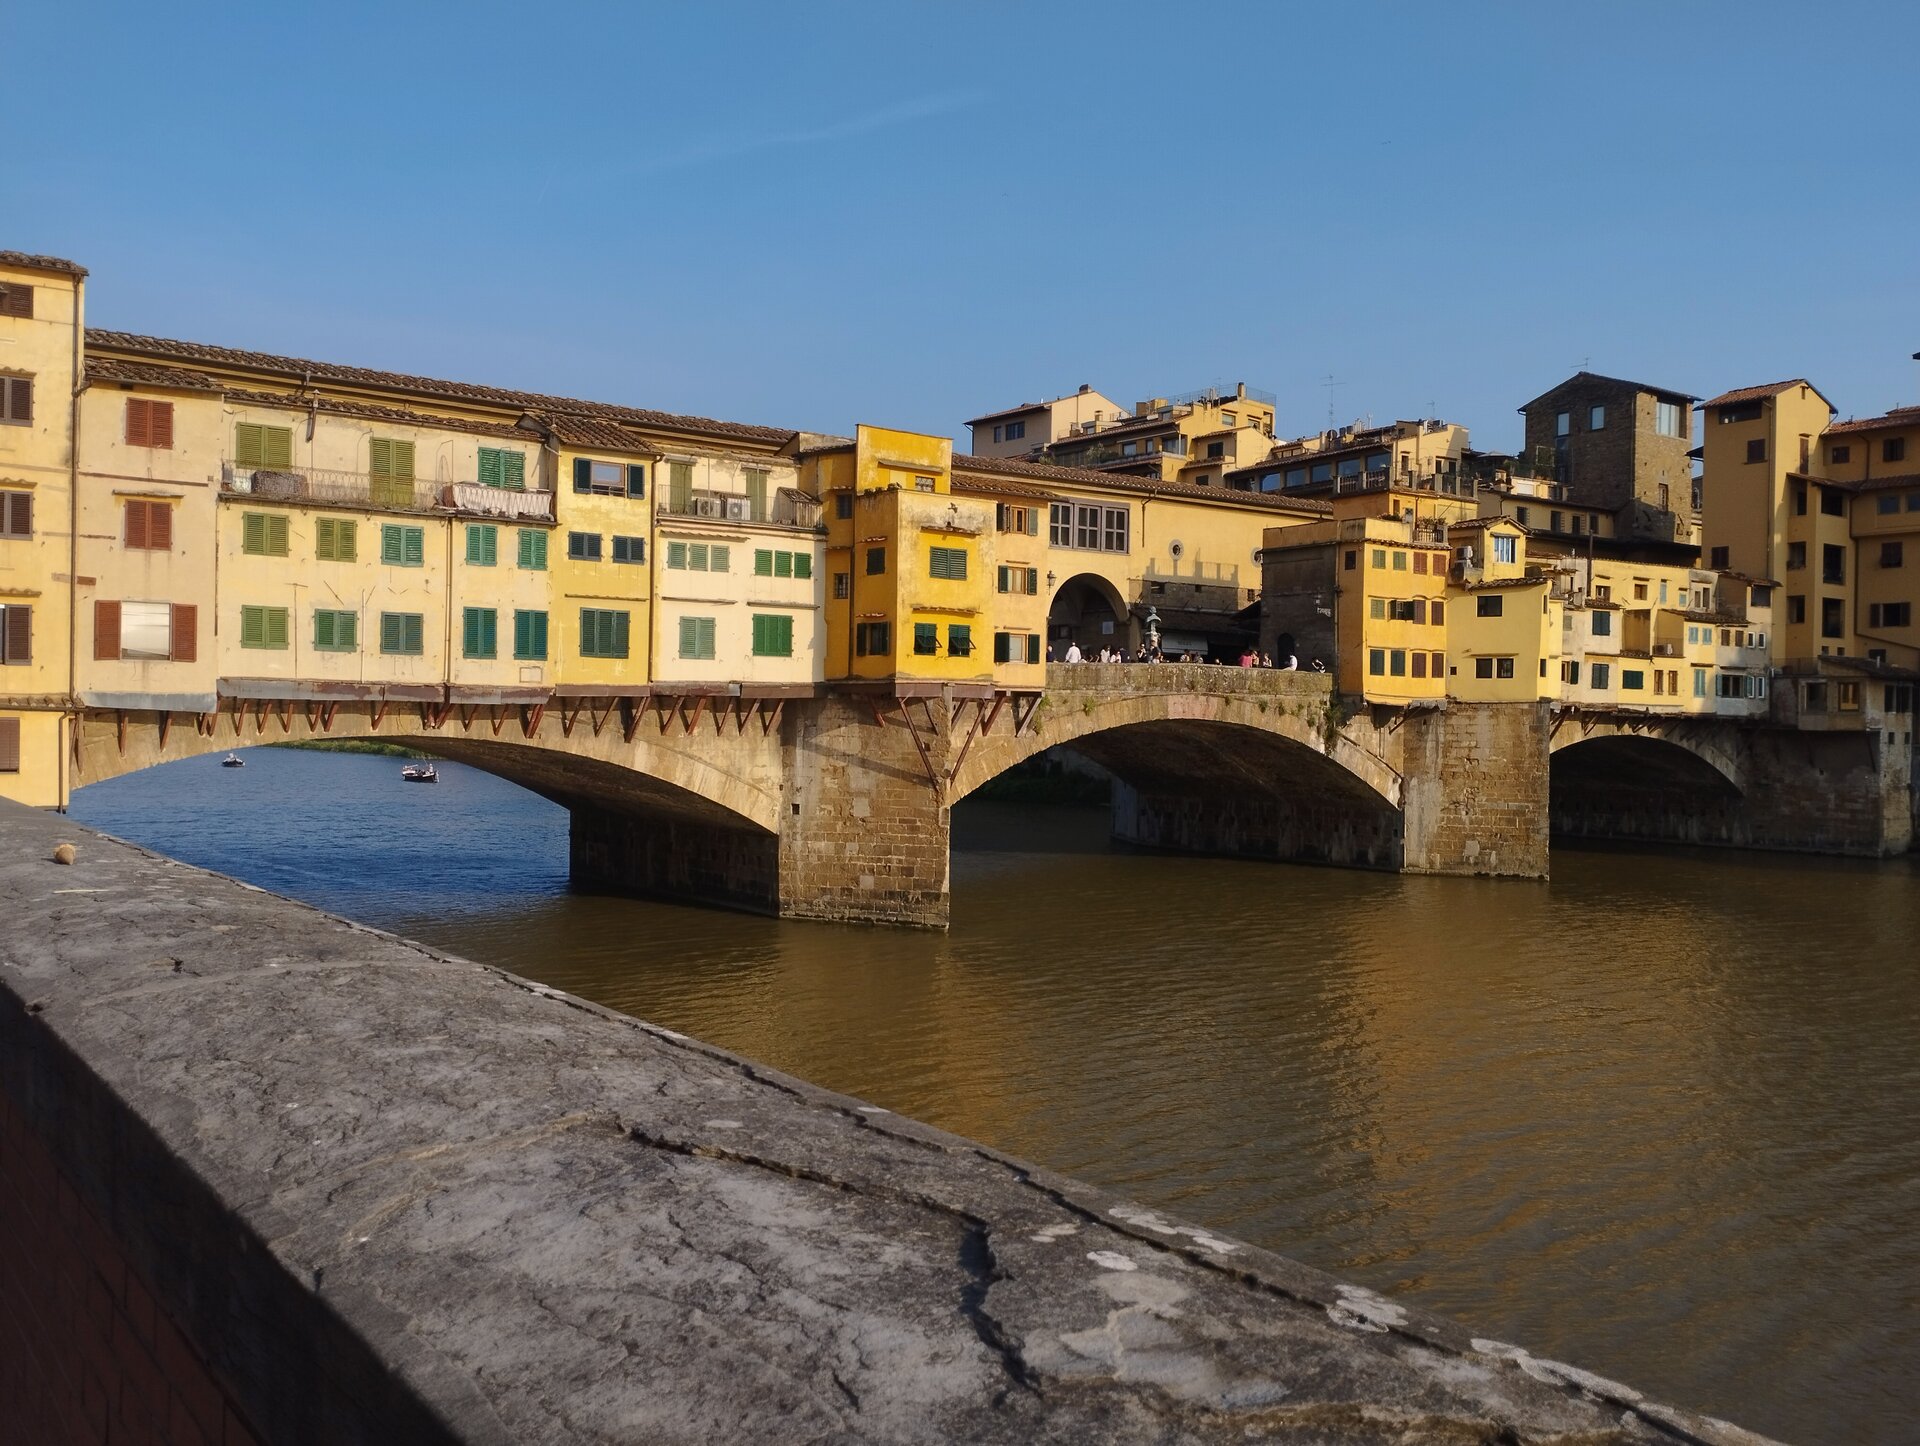 Fotografie einer Brücke in Florenz